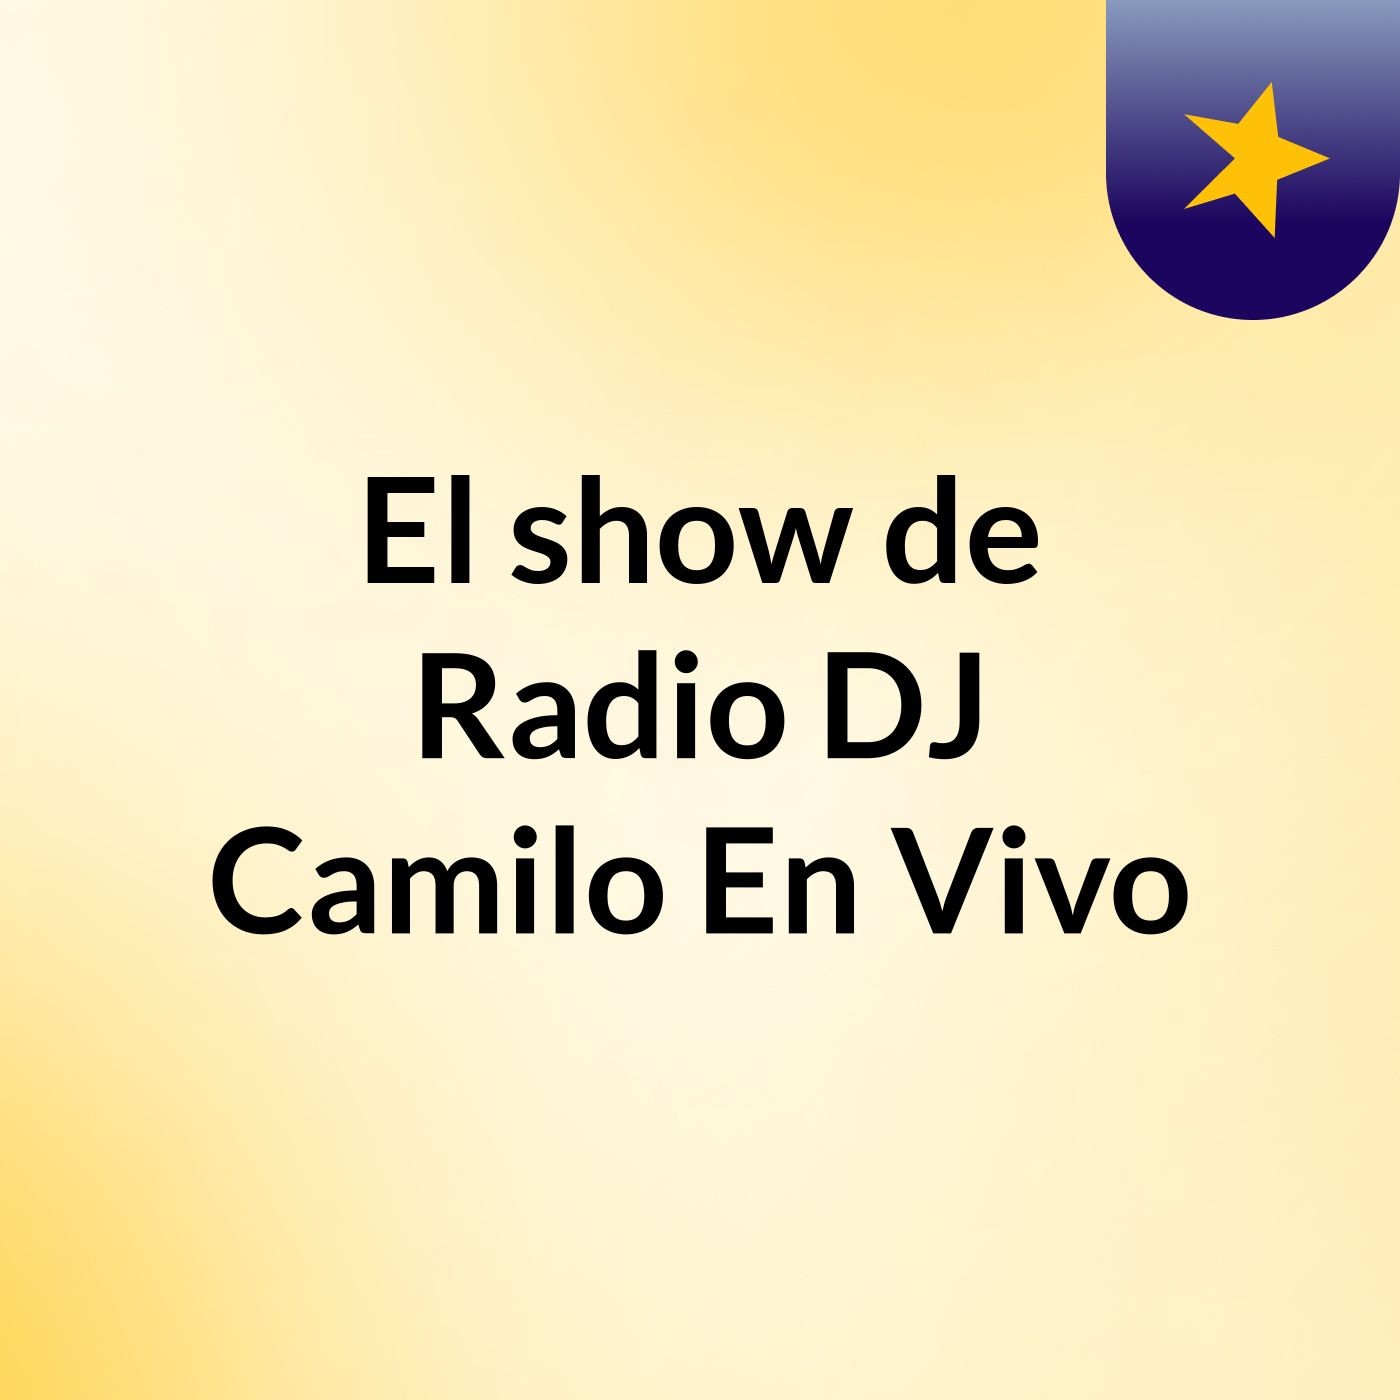 Episodio 4 - El show de Radio DJ Camilo En Vivo